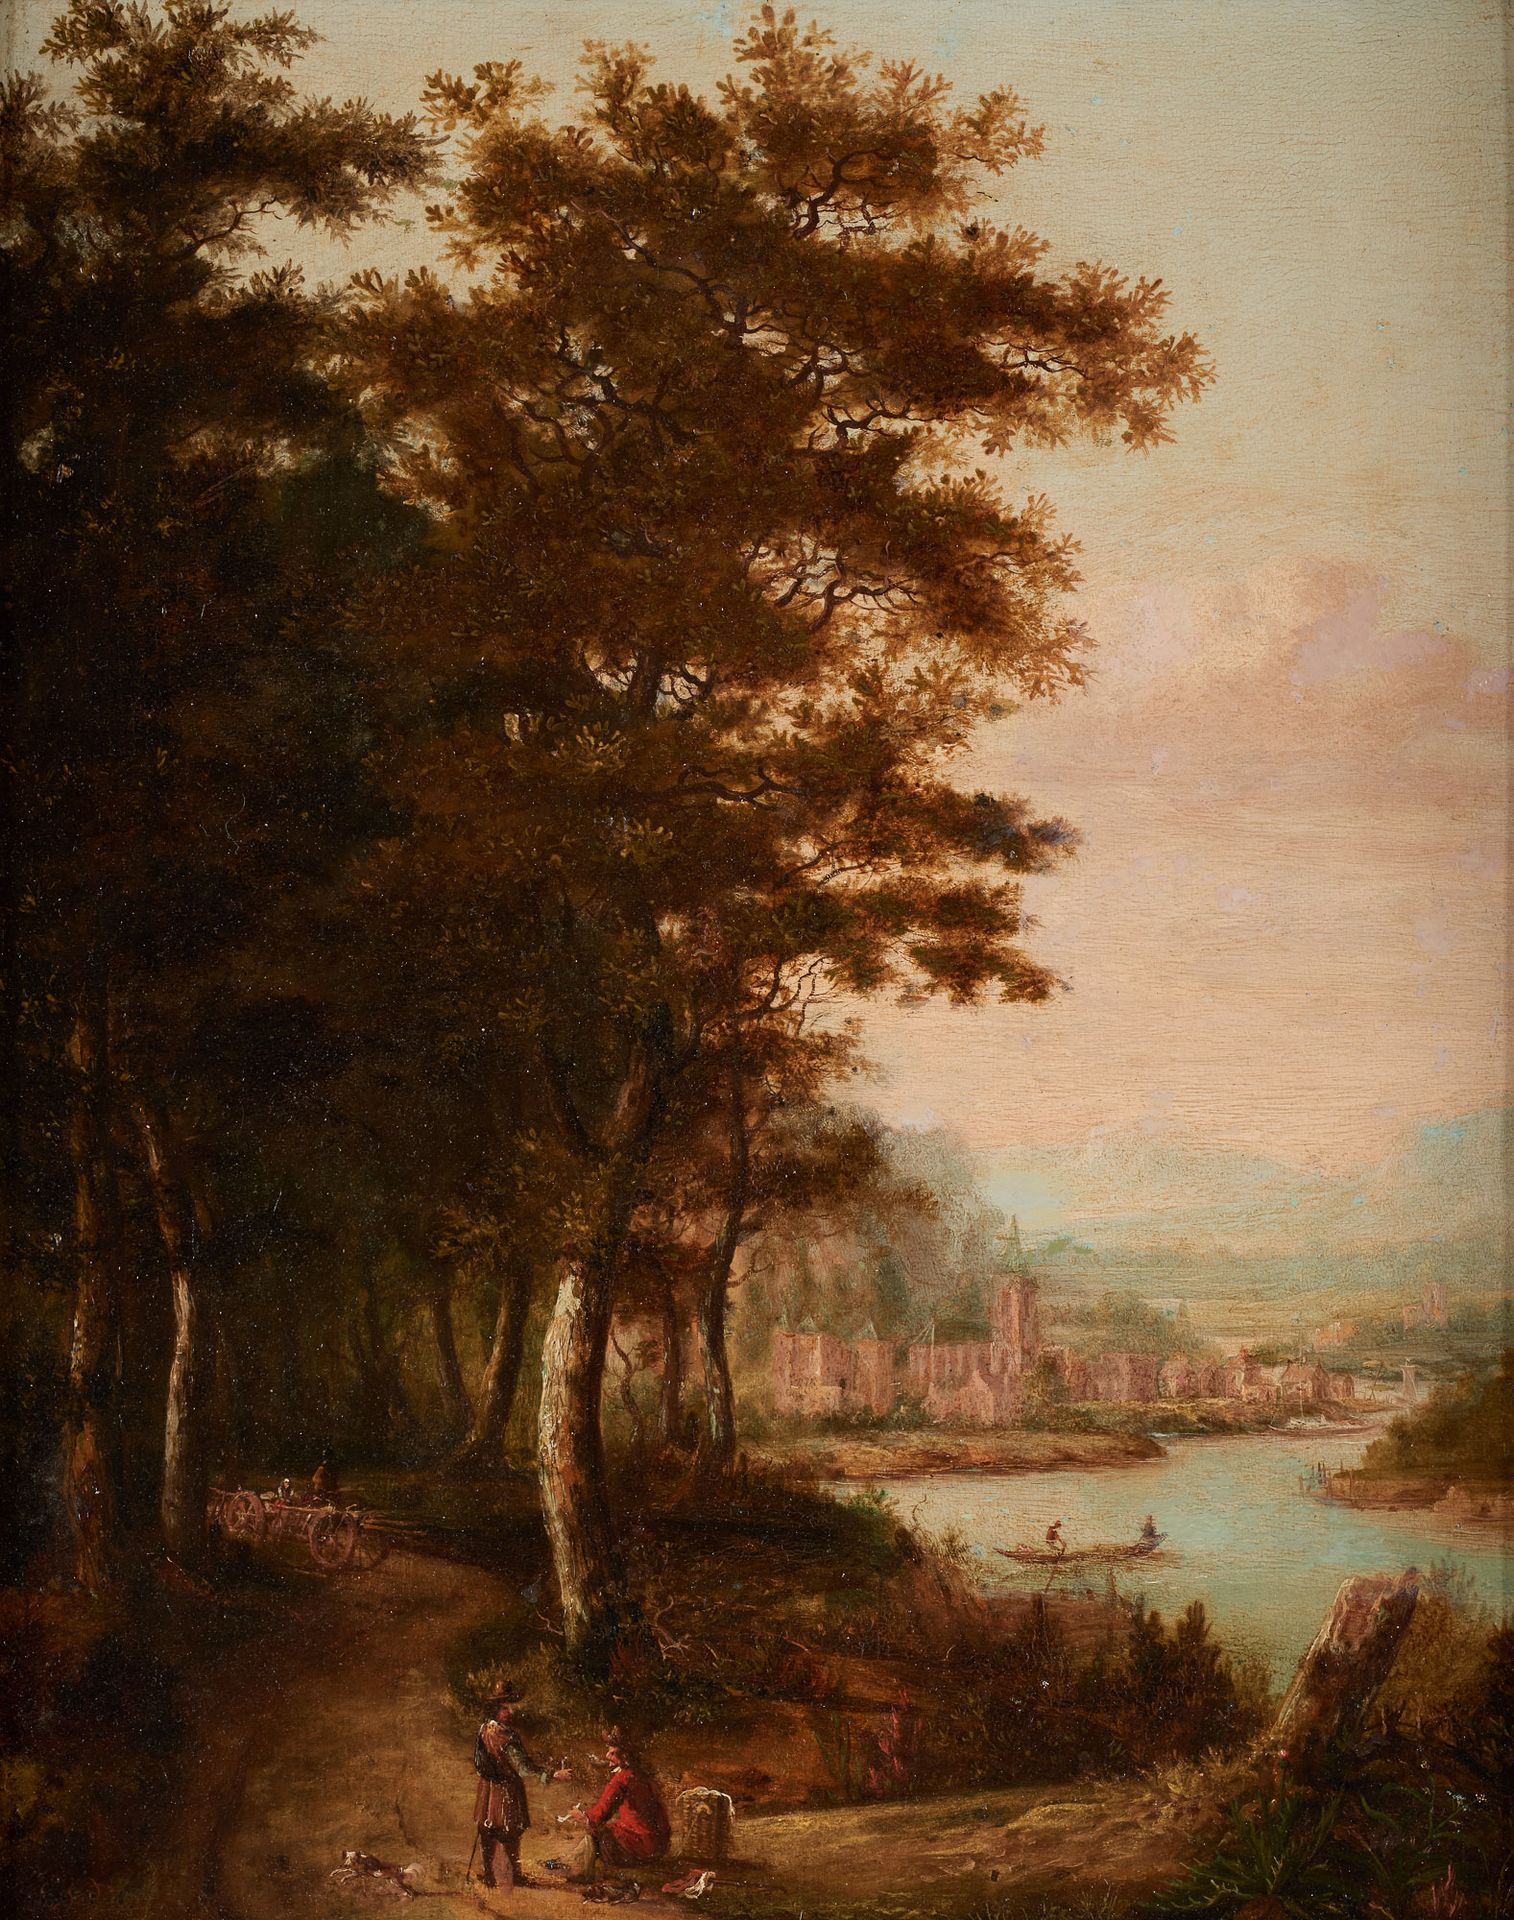 École flamande circa 1800. Öl auf Leinwand: Gespräch am Flussufer.

Monogrammier&hellip;